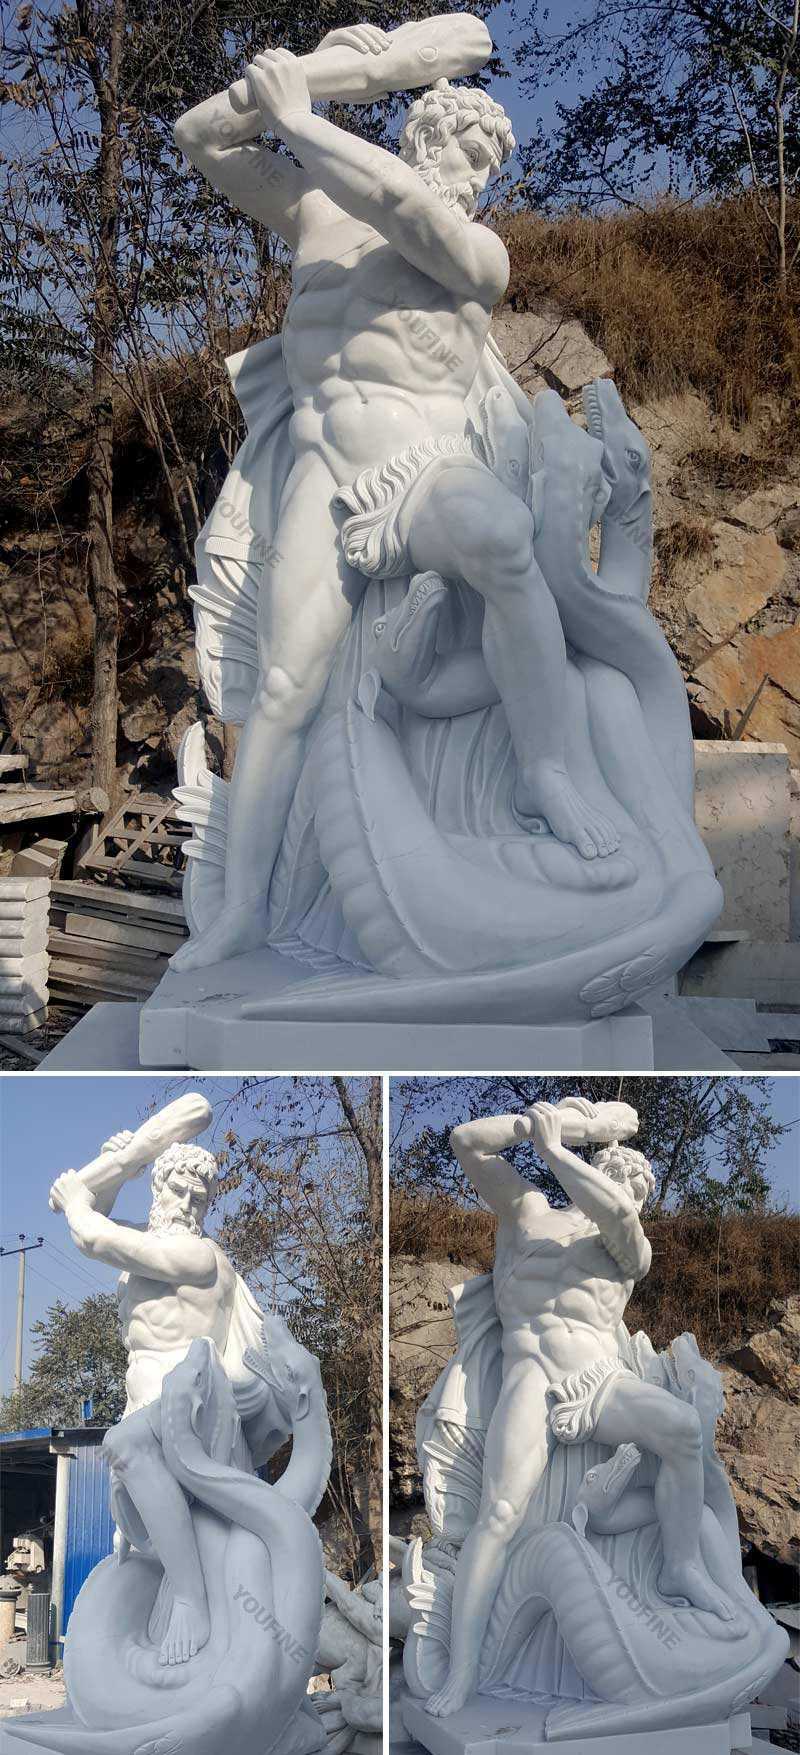 hercules and minotaur statue